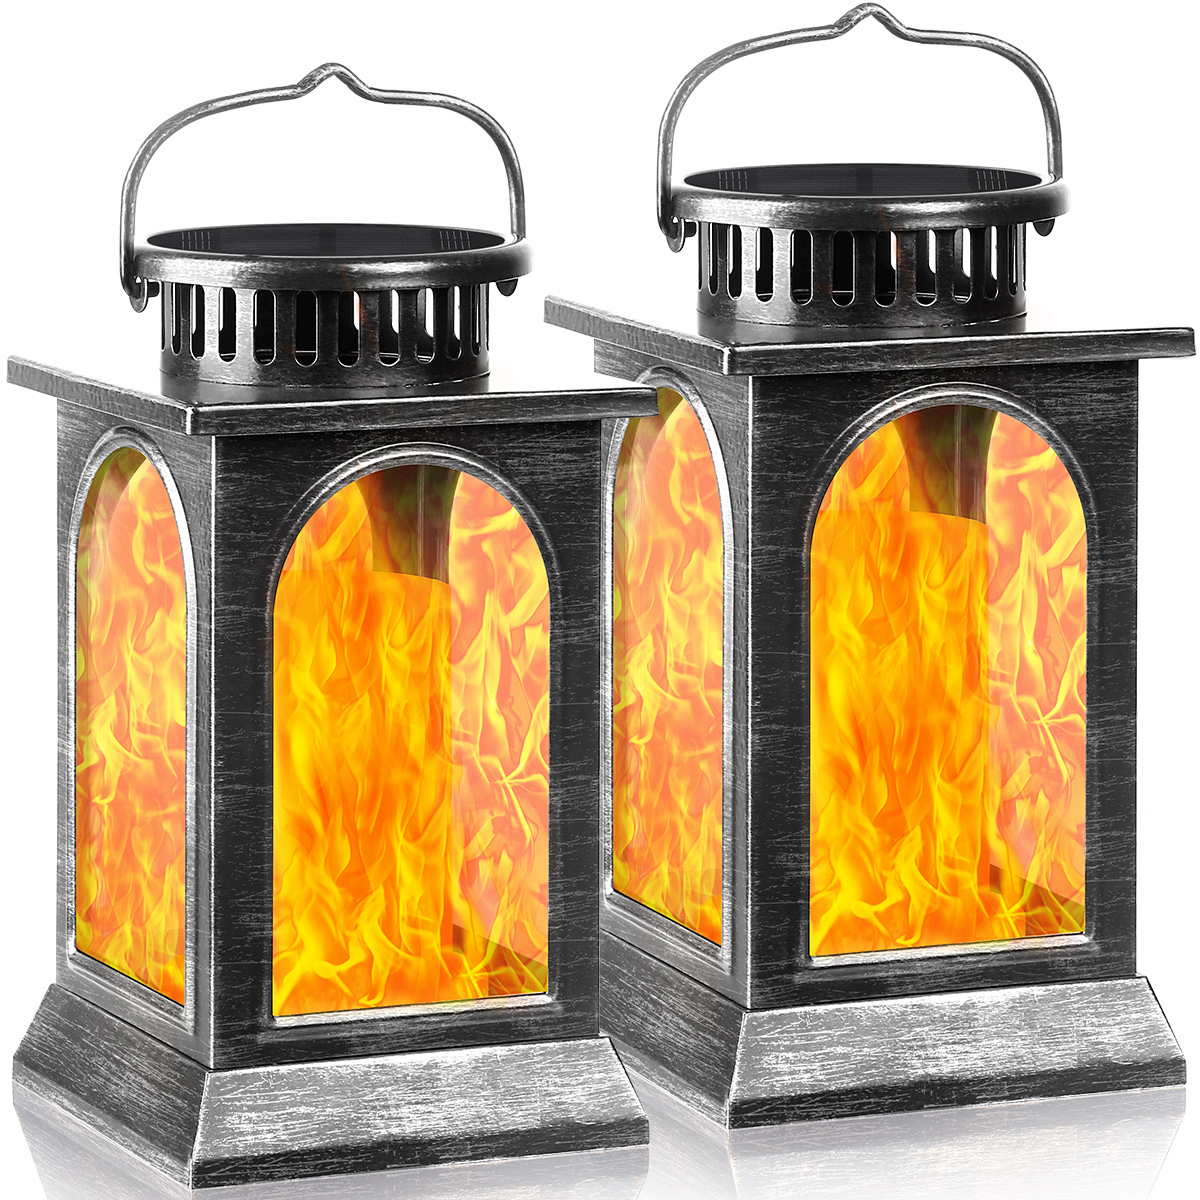 https://www.momjunction.com/wp-content/uploads/product-images/tomcare-solar-lights-metal-flickering-flame-solar-lantern_afl83.jpg